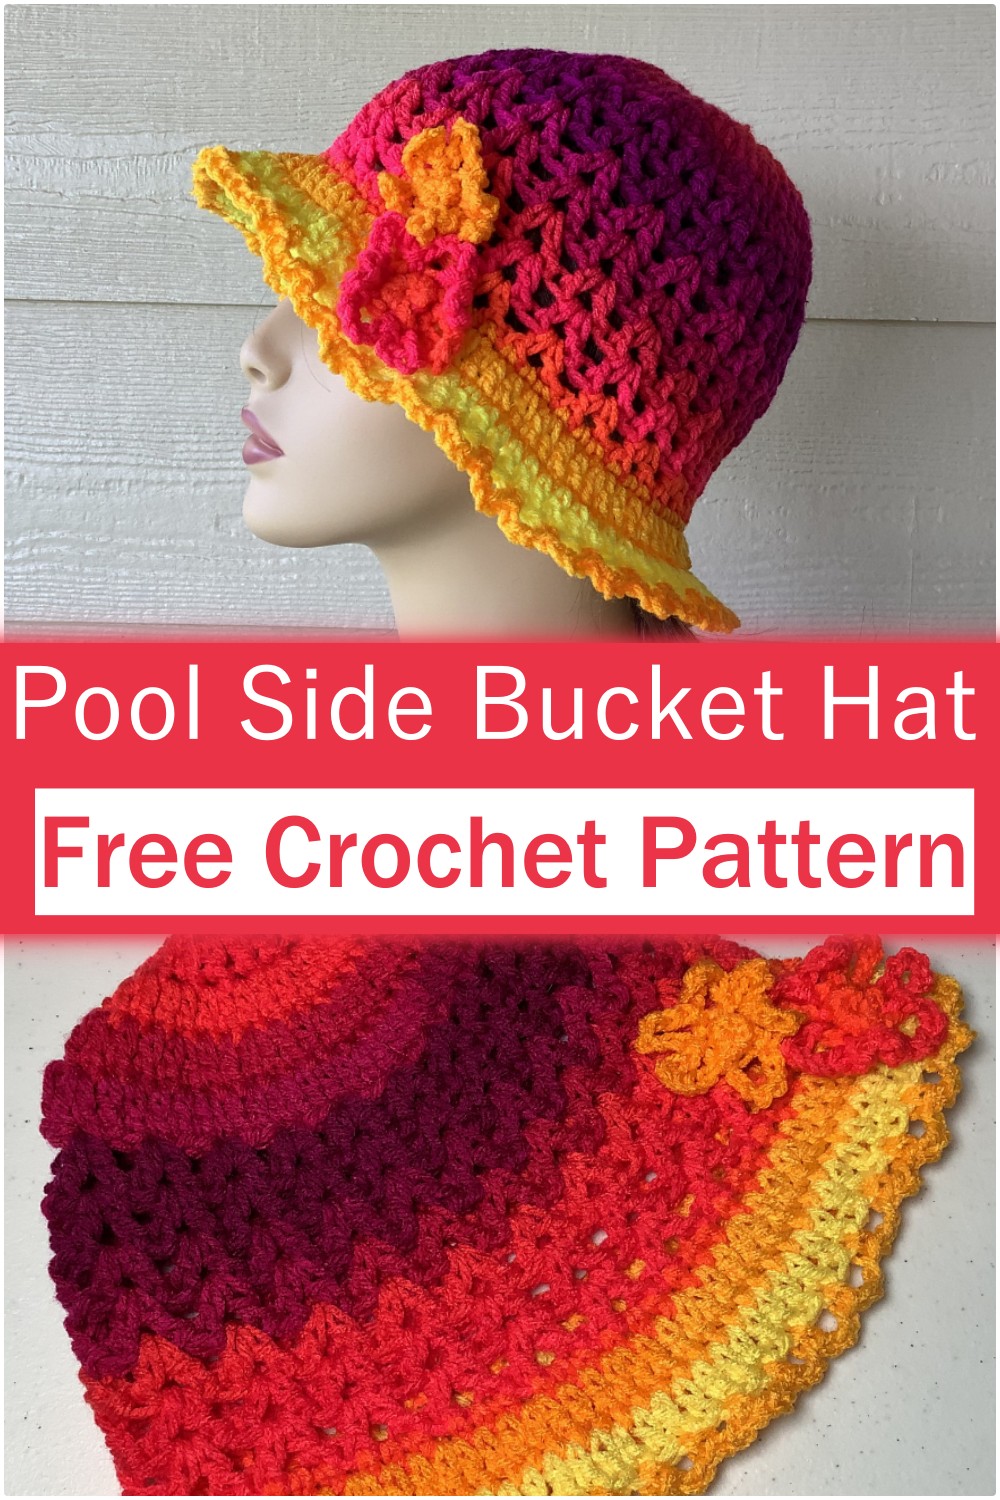 How To Crochet Bucket Hat